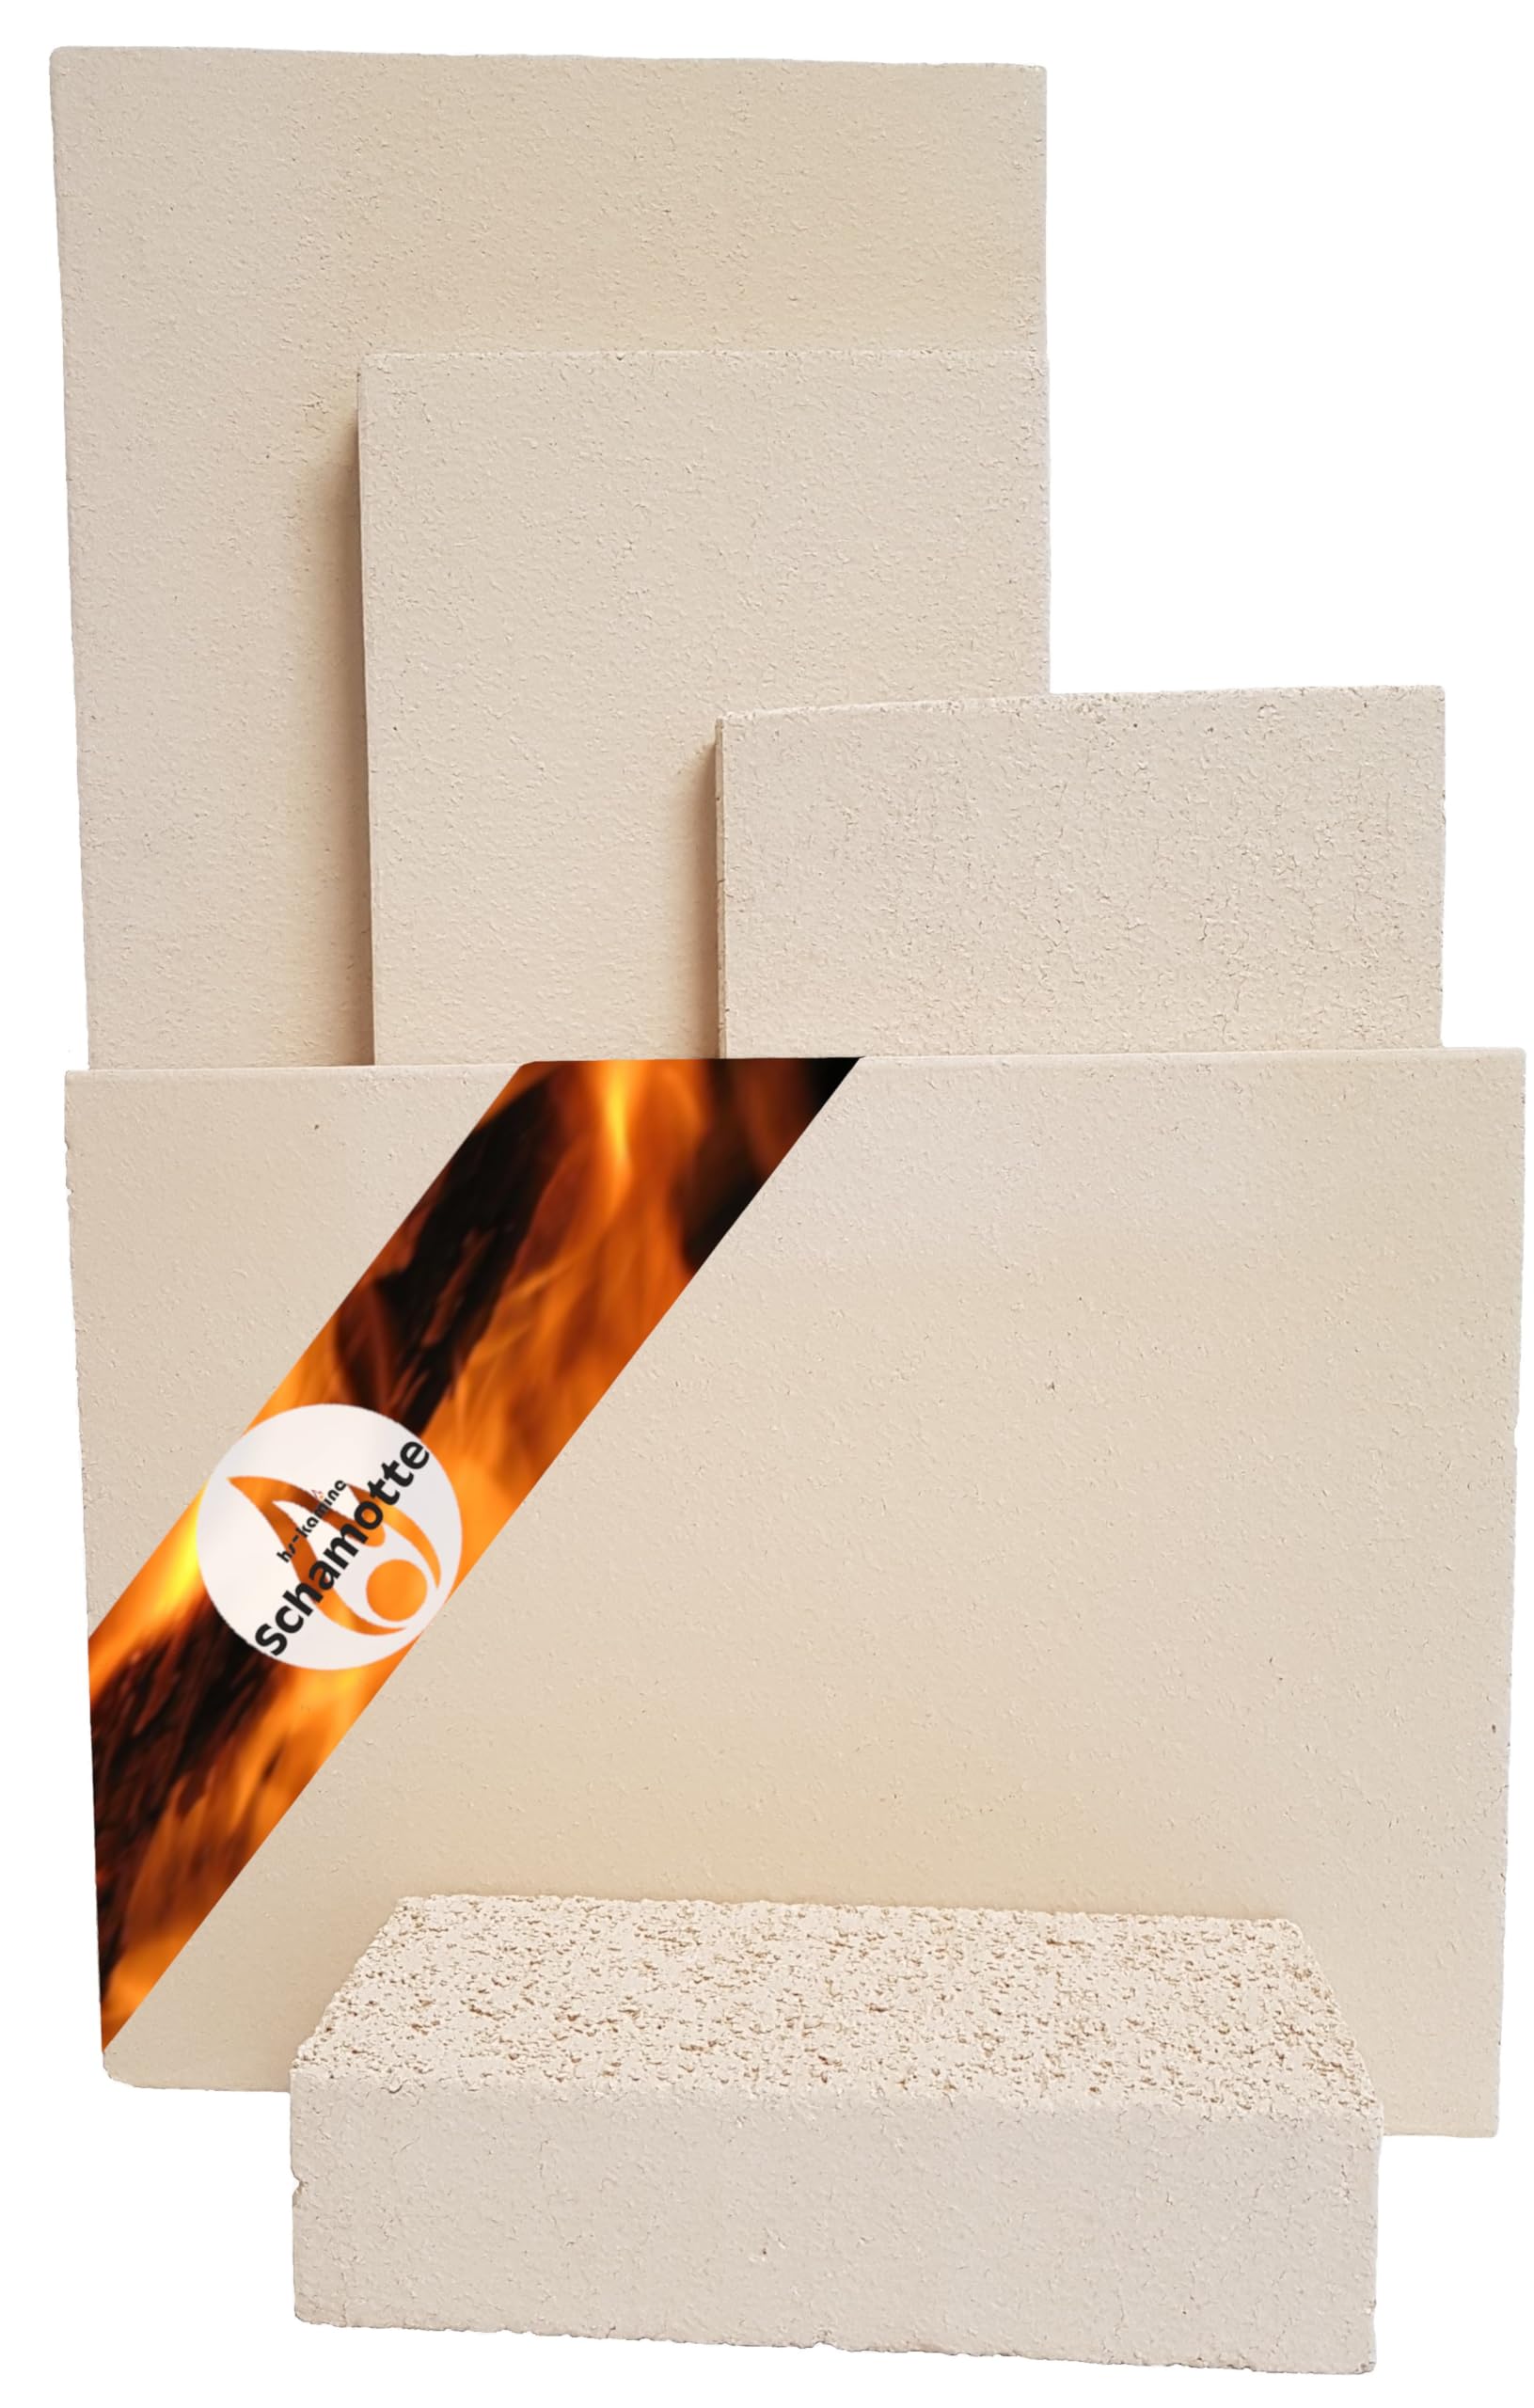 Schamotteplatten Premium Wh für den Feuerraum und auch für Holzbacköfen, Pizzaöfen und Grills feuerfest & lebensmittelecht viele Größen online verfügbar (400 x 200 x 30 mm, 4 Stück)